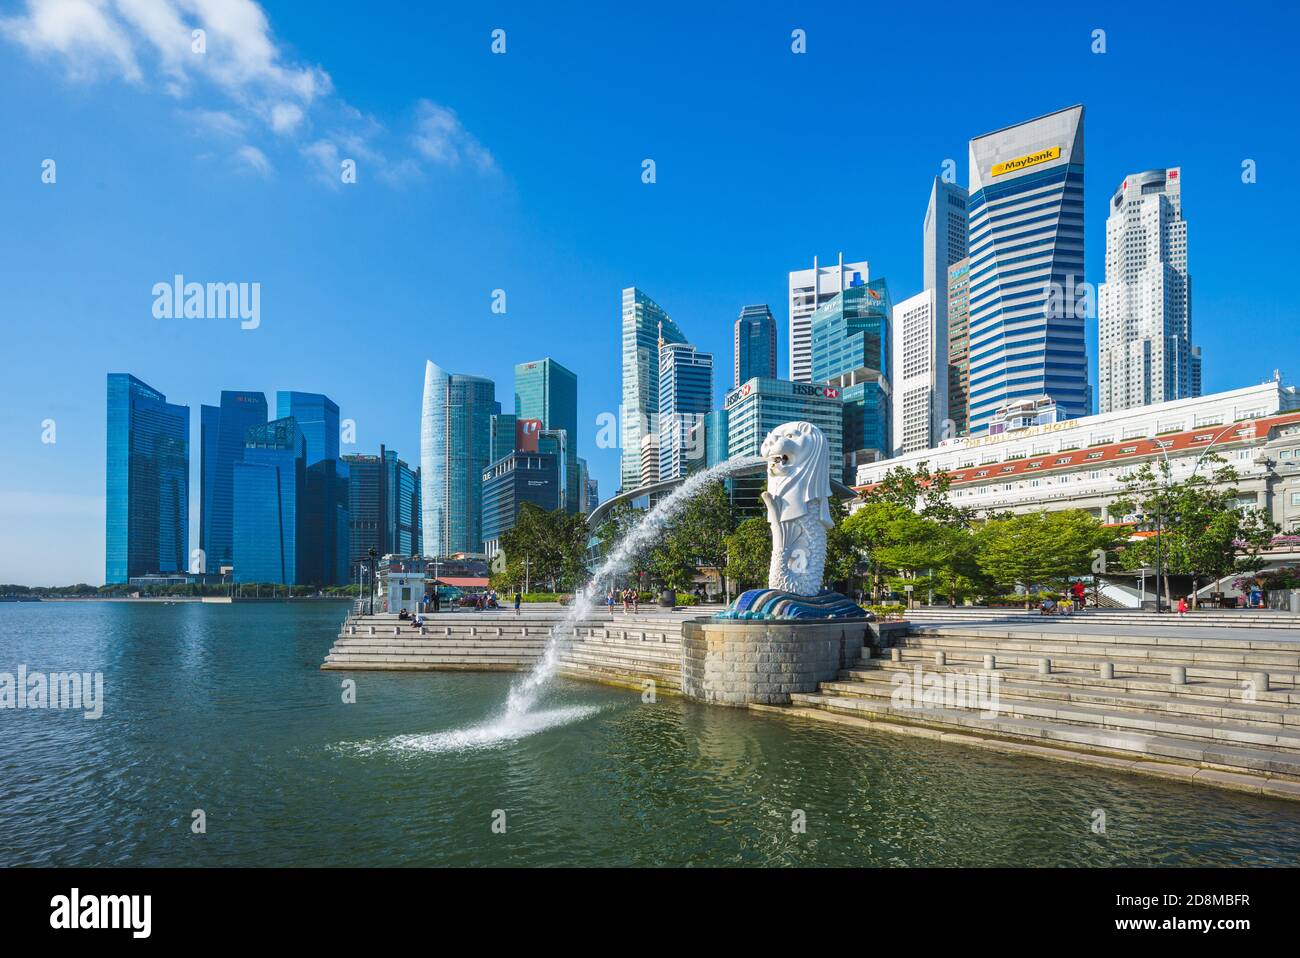 6. Februar 2020: merlion und Sand im merlion Park in der Marina Bay von singapur. Merlion ist das nationale Symbol Singapurs, das als mythisches c dargestellt wird Stockfoto